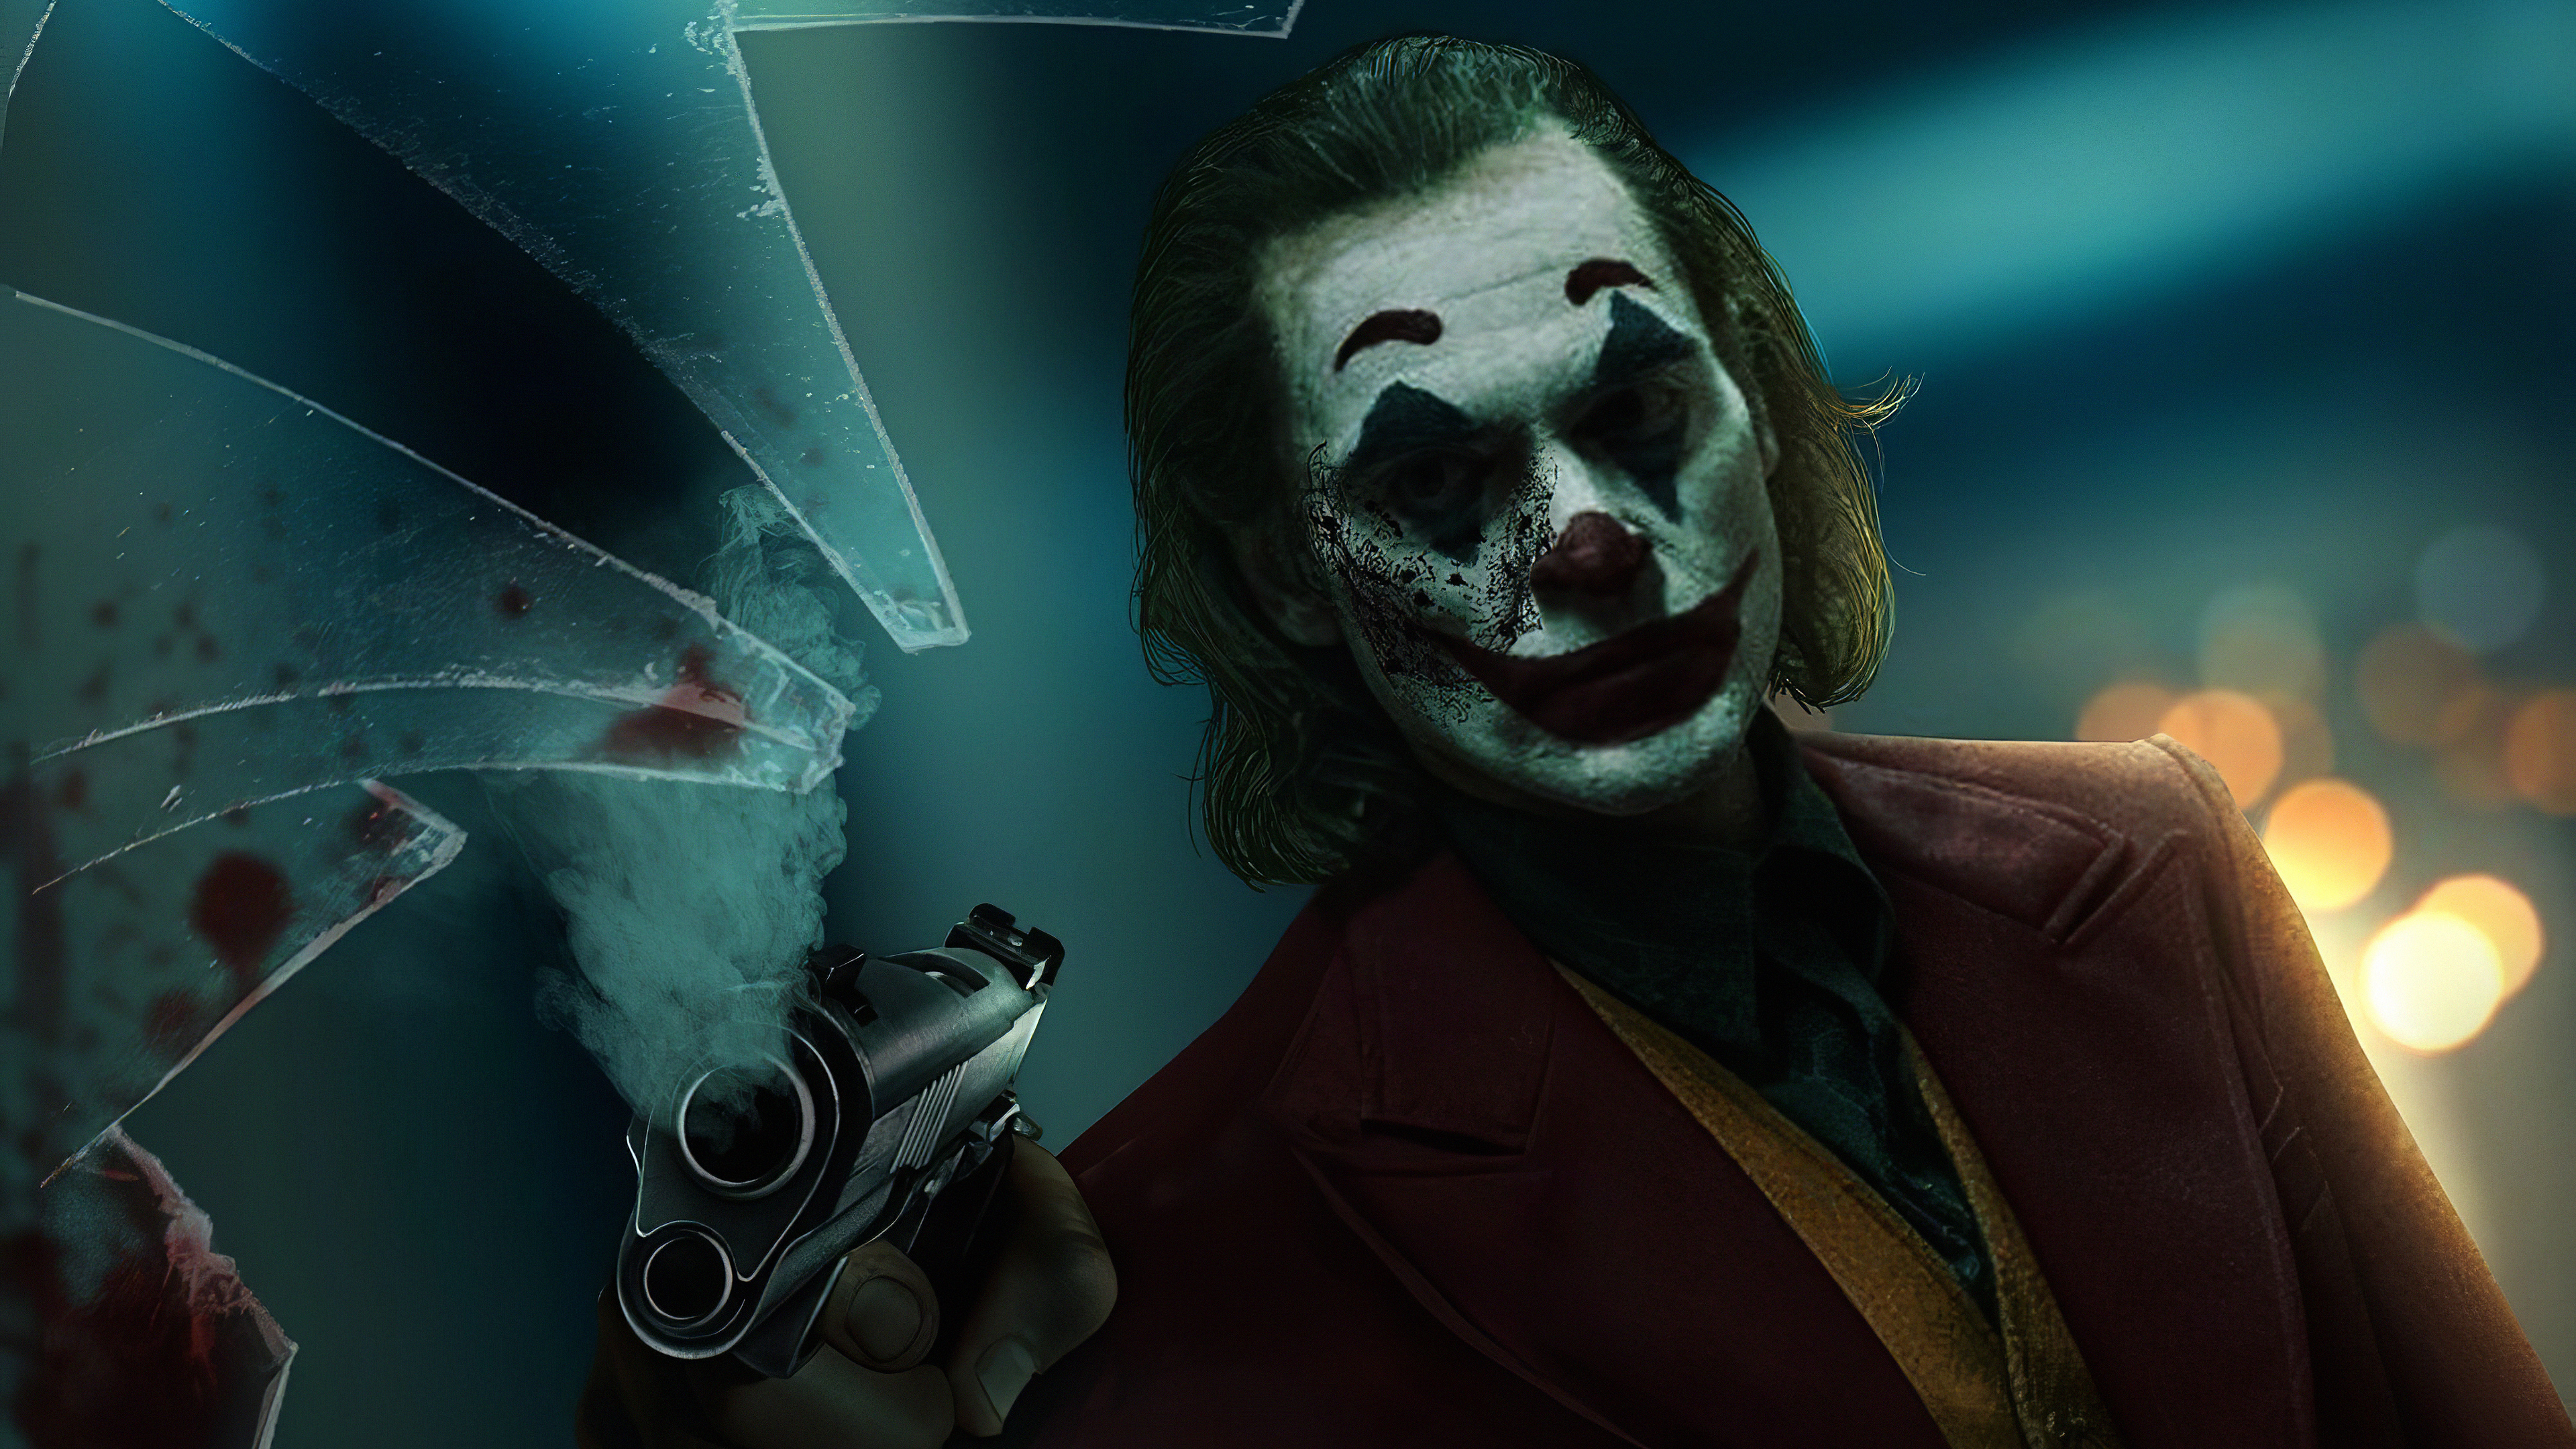 Joker With Gun Art - HD Wallpaper 